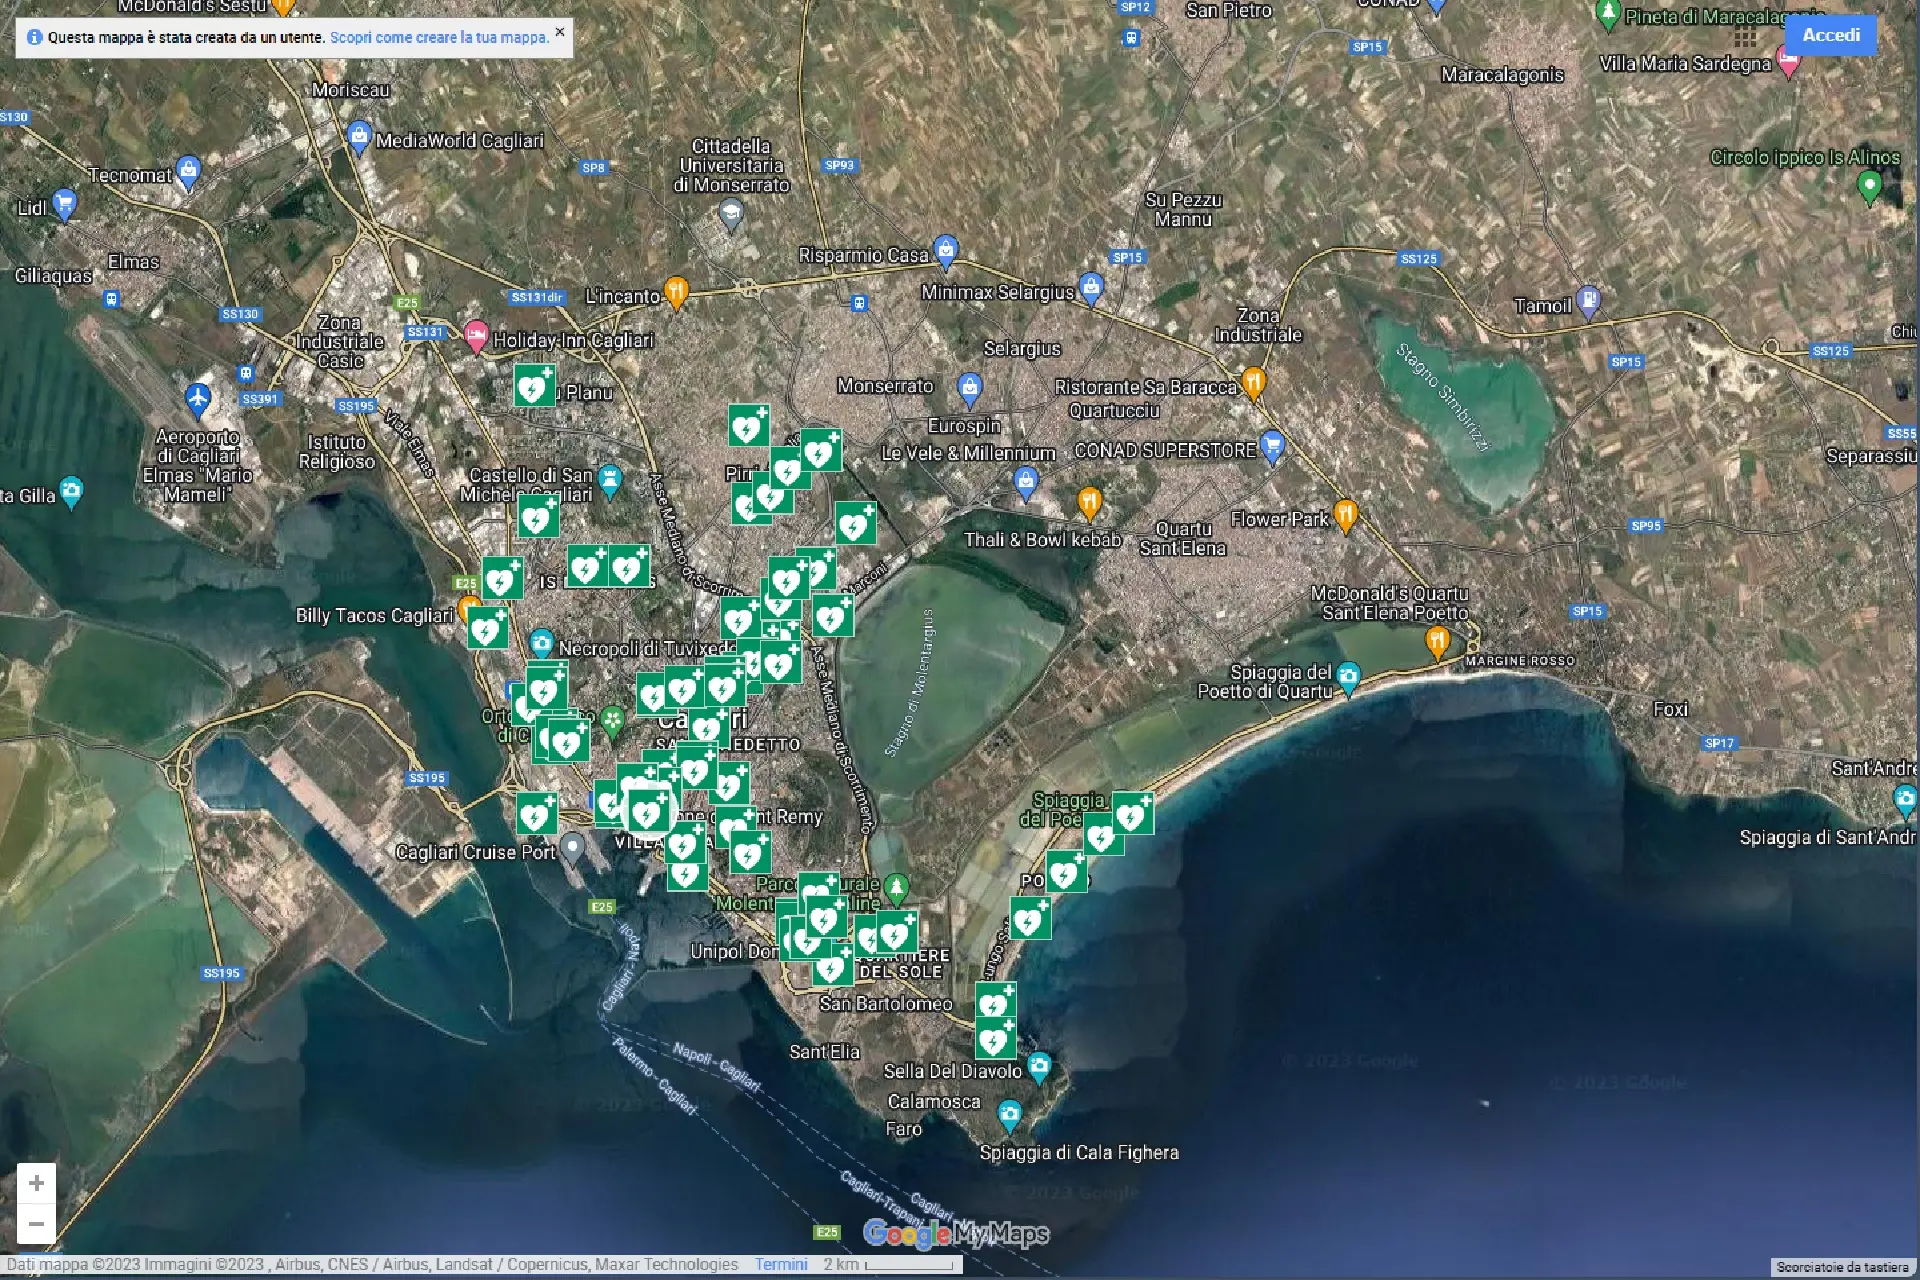 La mappa dei defibrillatori a Cagliari (foto ufficio stampa)